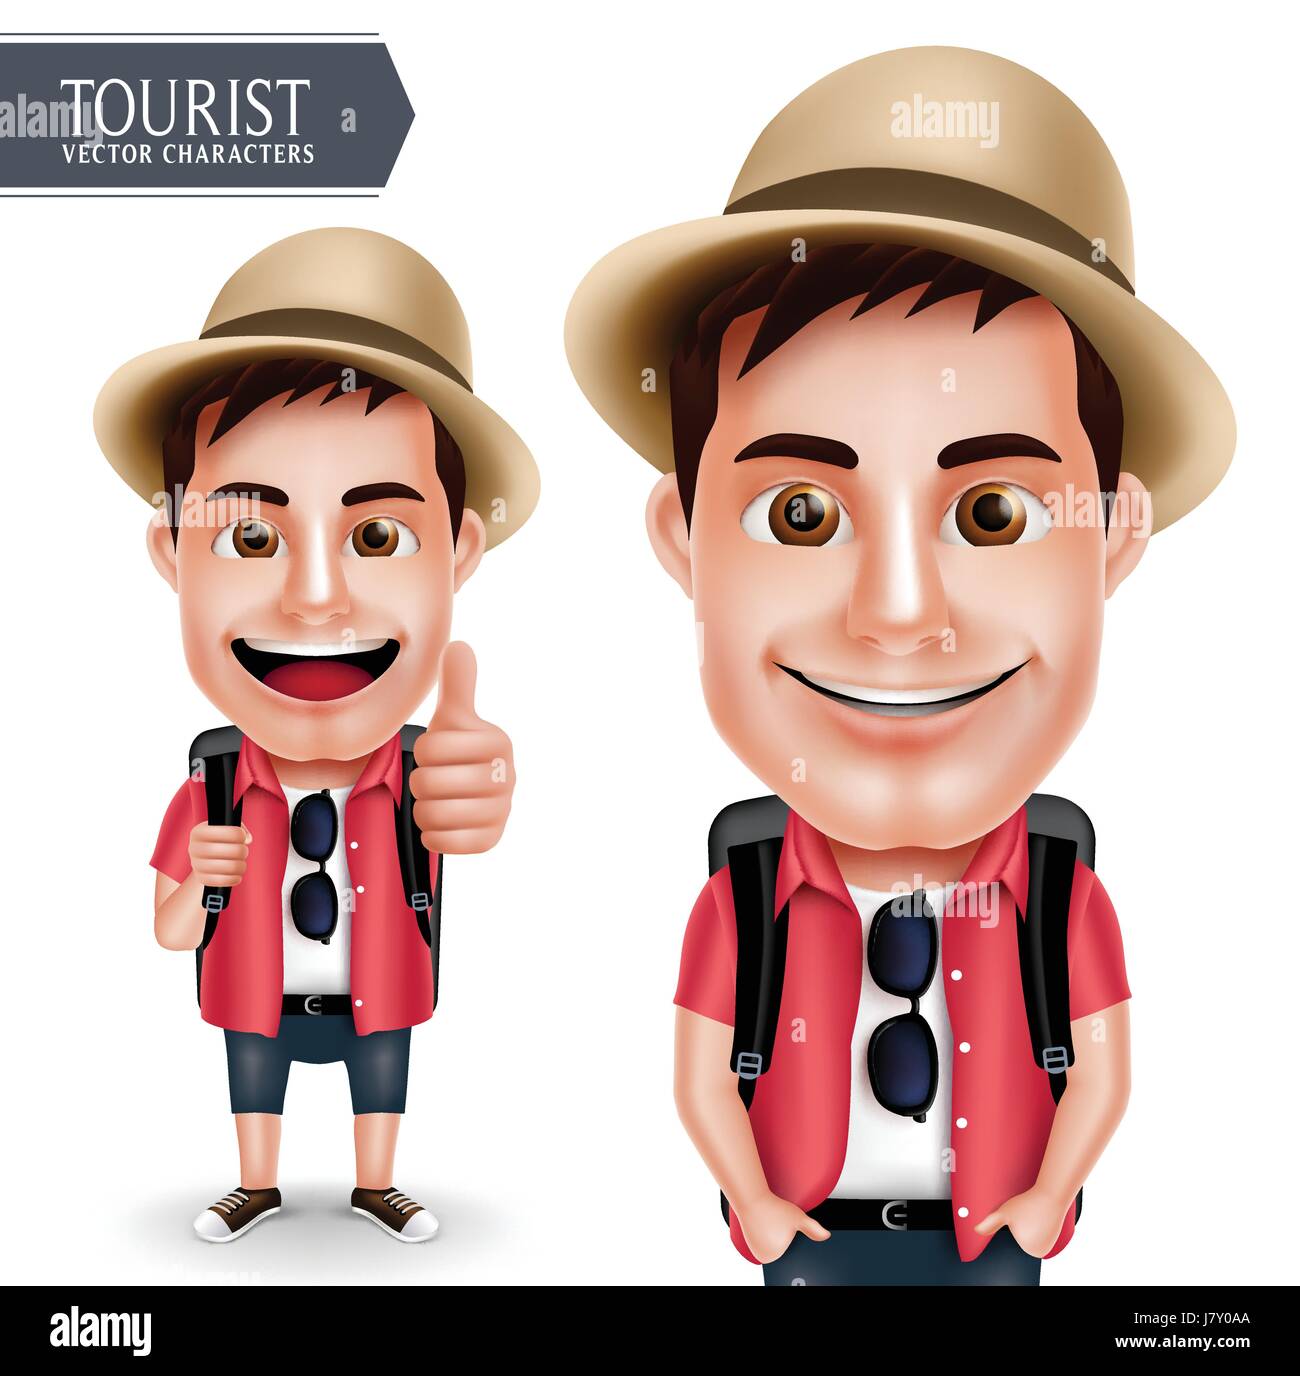 Tourist Traveler uomo carattere vettoriale indossa casual con zaino per viaggi e escursioni isolato in uno sfondo bianco. Vettore di set di caratteri Illustrazione Vettoriale